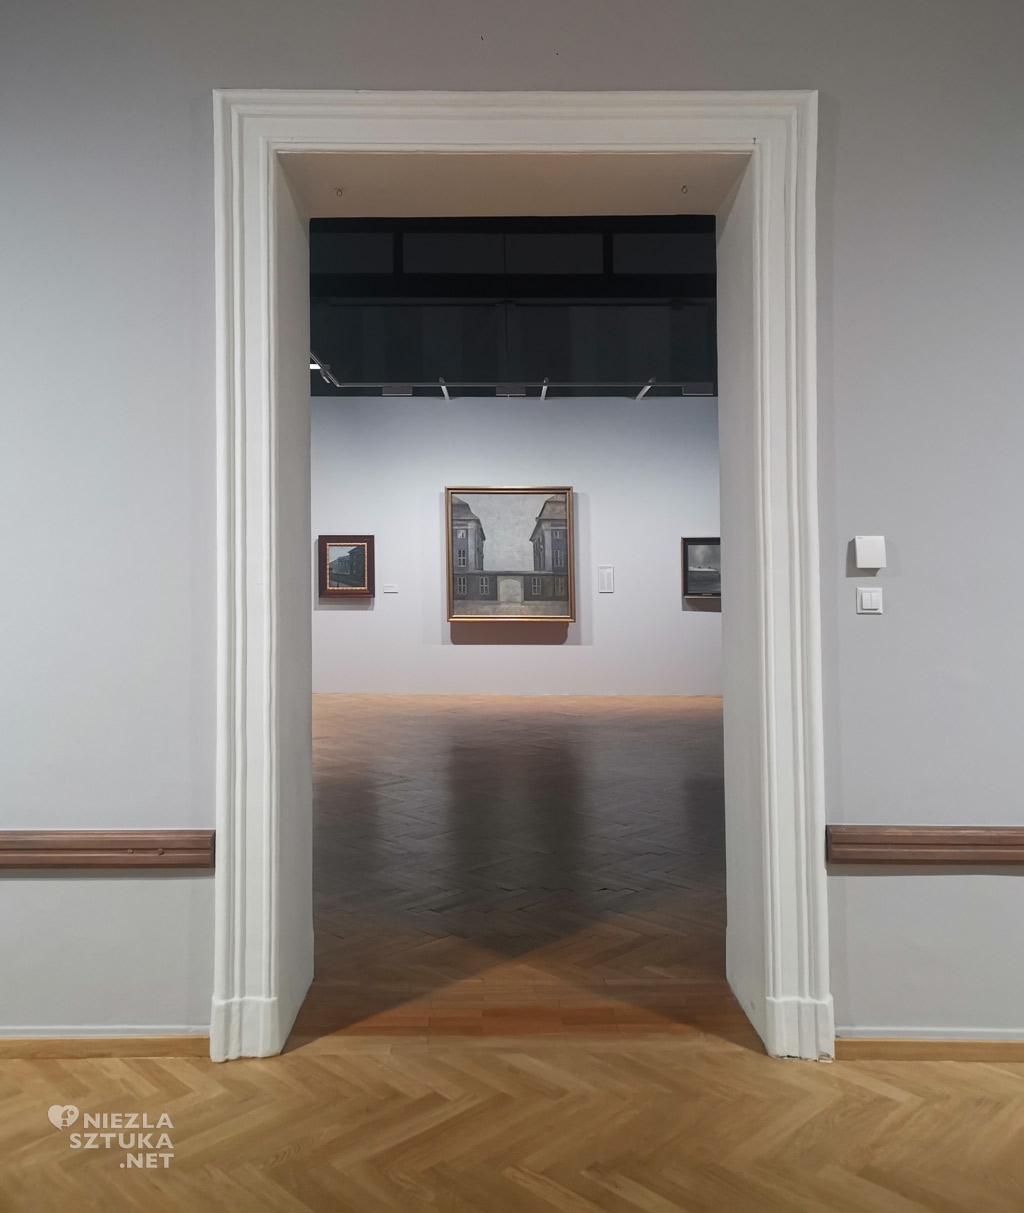 Vilhelm Hammershoi, Hammershoi światło i cisza, wystawa, Muzeum Narodowe w Poznaniu, niezła sztuka